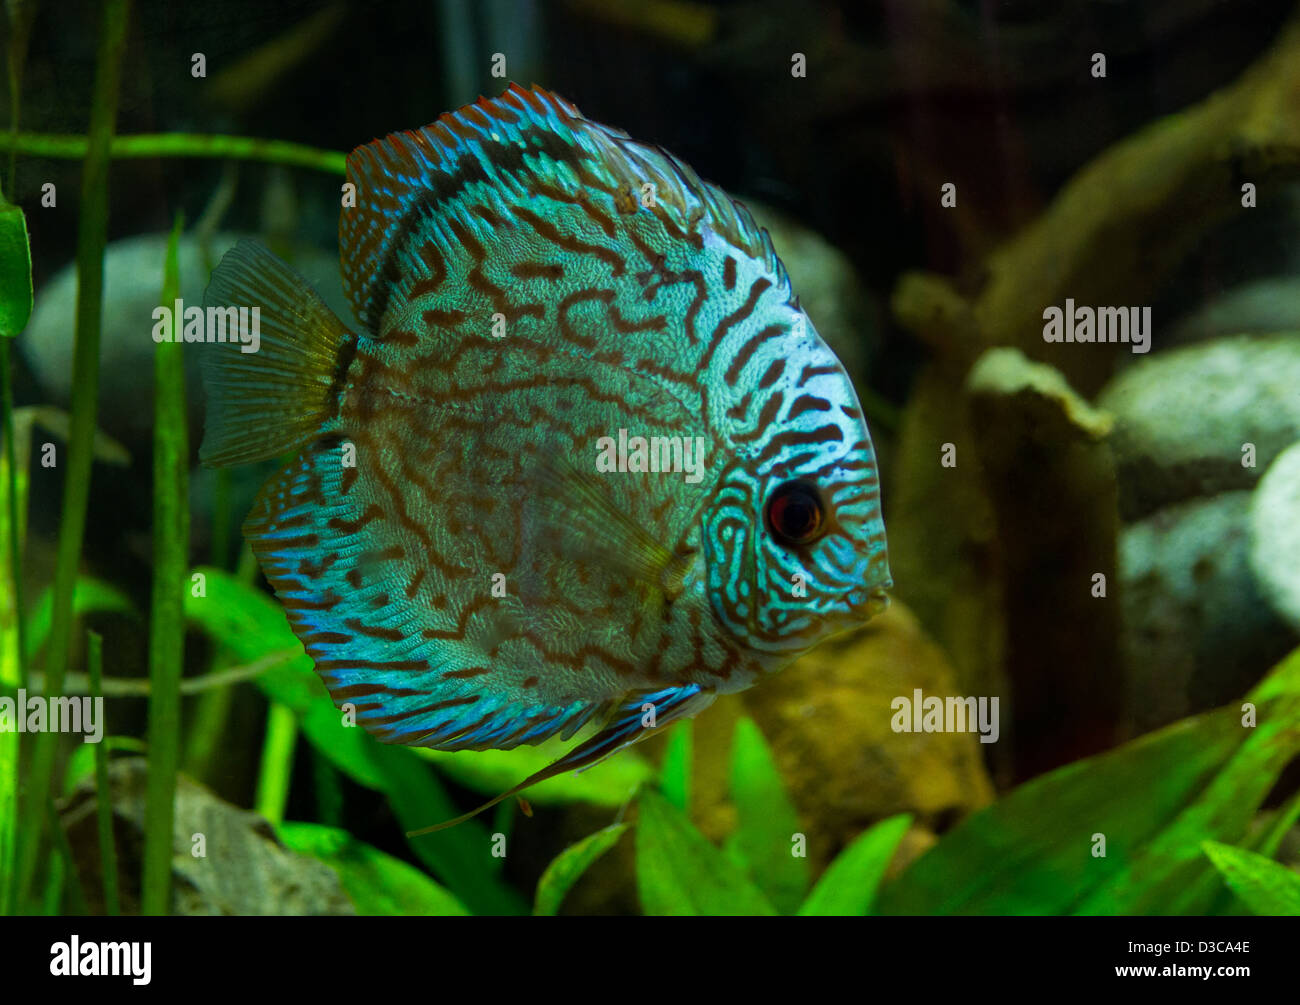 Superb Discus fish (Symphysodon aequifasciatu) Stock Photo